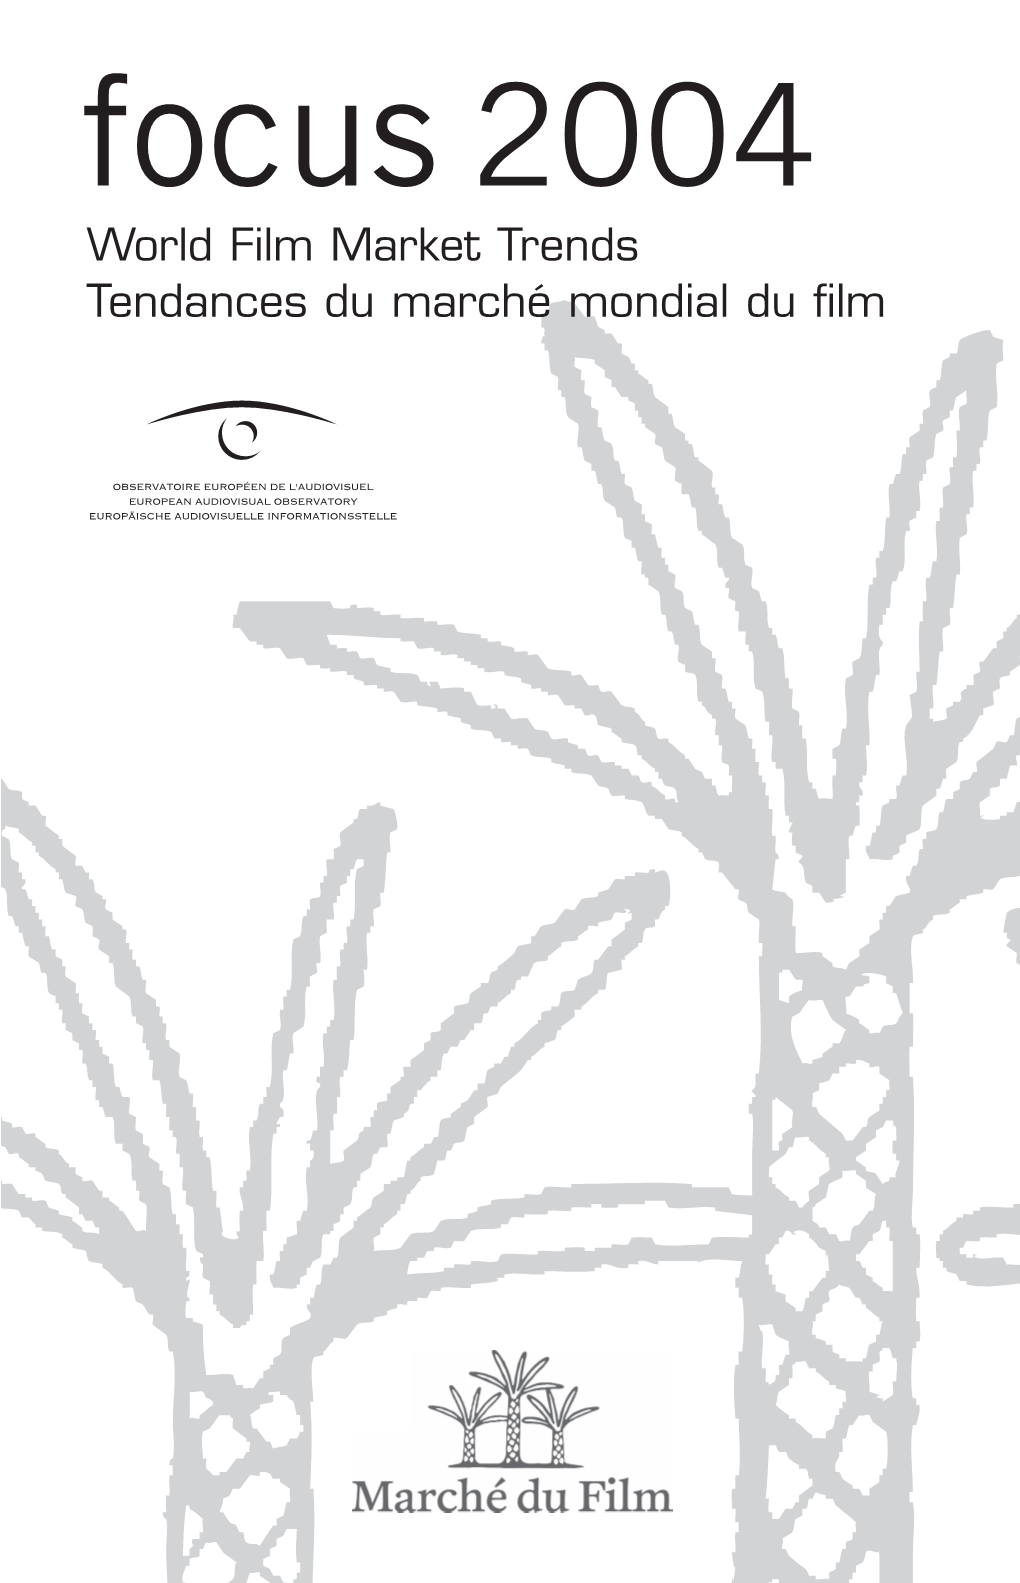 Focus 2004 World Film Market Trends Tendances Du Marché Mondial Du Film 04030533-Brochure 29/04/04 8:50 Page 2